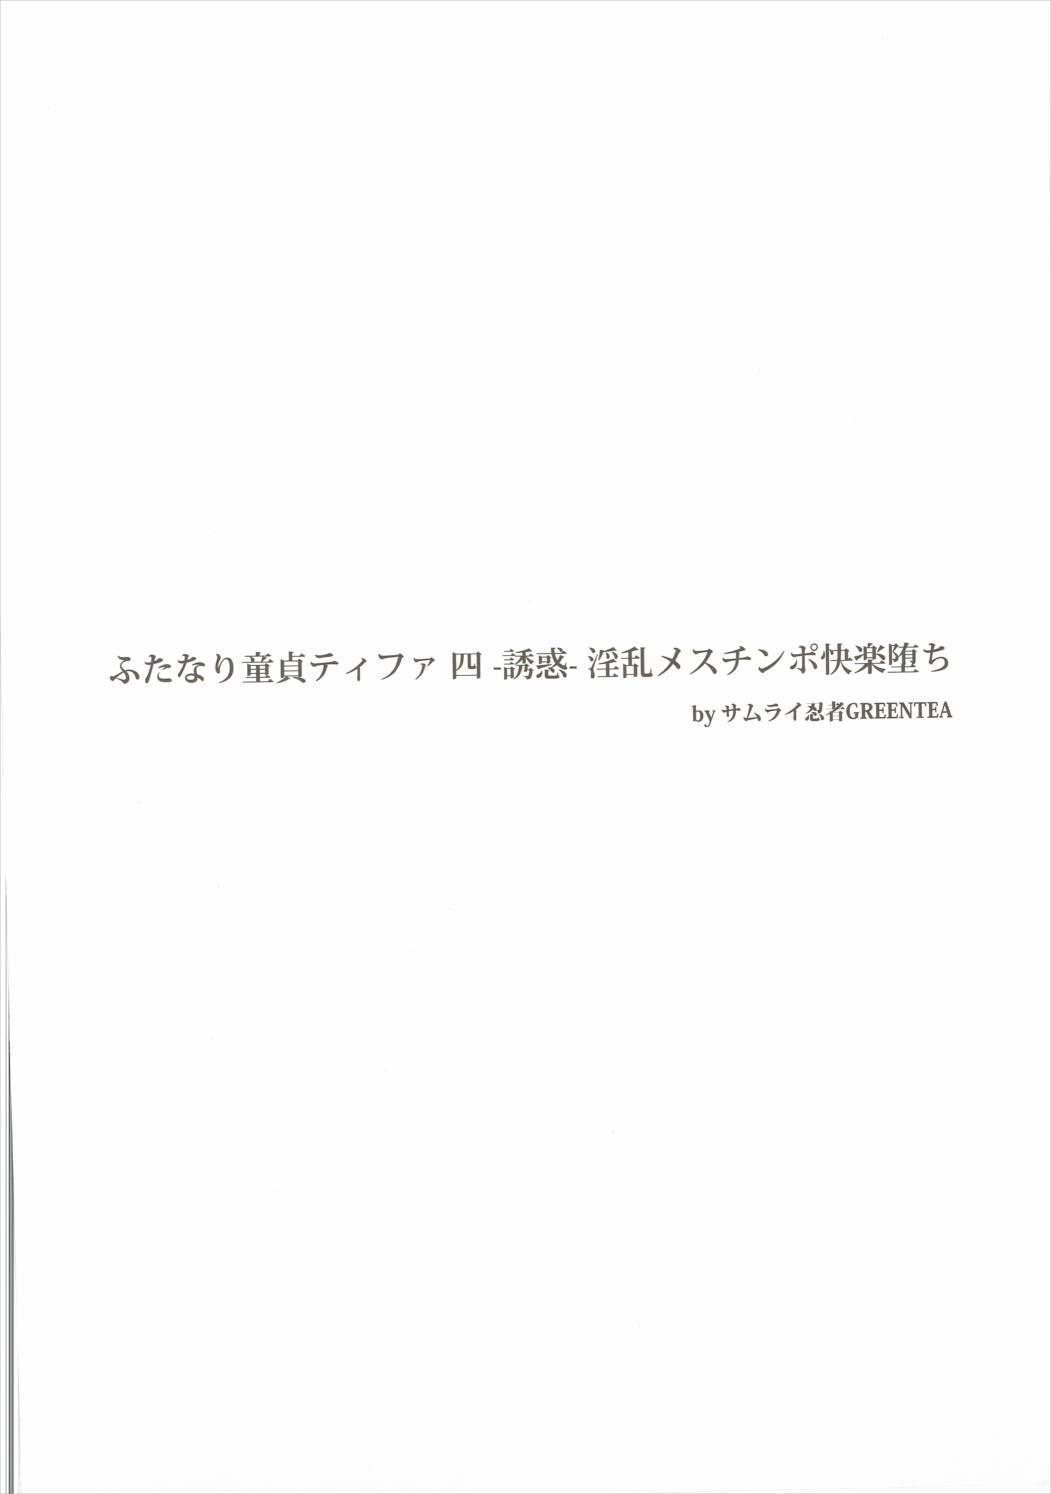 (Futaket 12.5) [Samurai Ninja GREENTEA] Futanari Doutei Tifa Yon - Yuuwaku- Inran Mesuchinpo Kairaku Ochi (Final Fantasy VII) 2